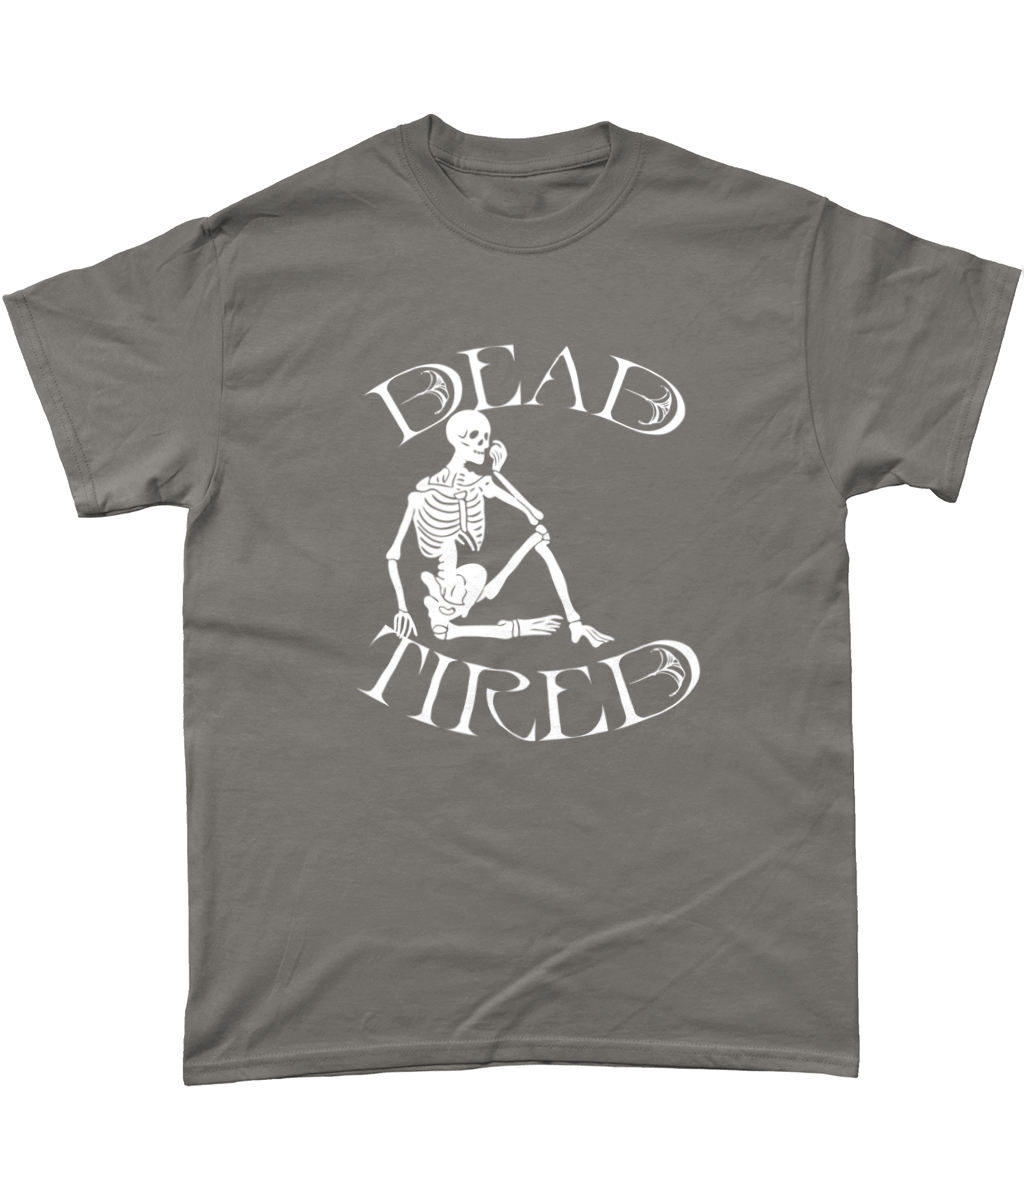 Dead Tired T-Shirt